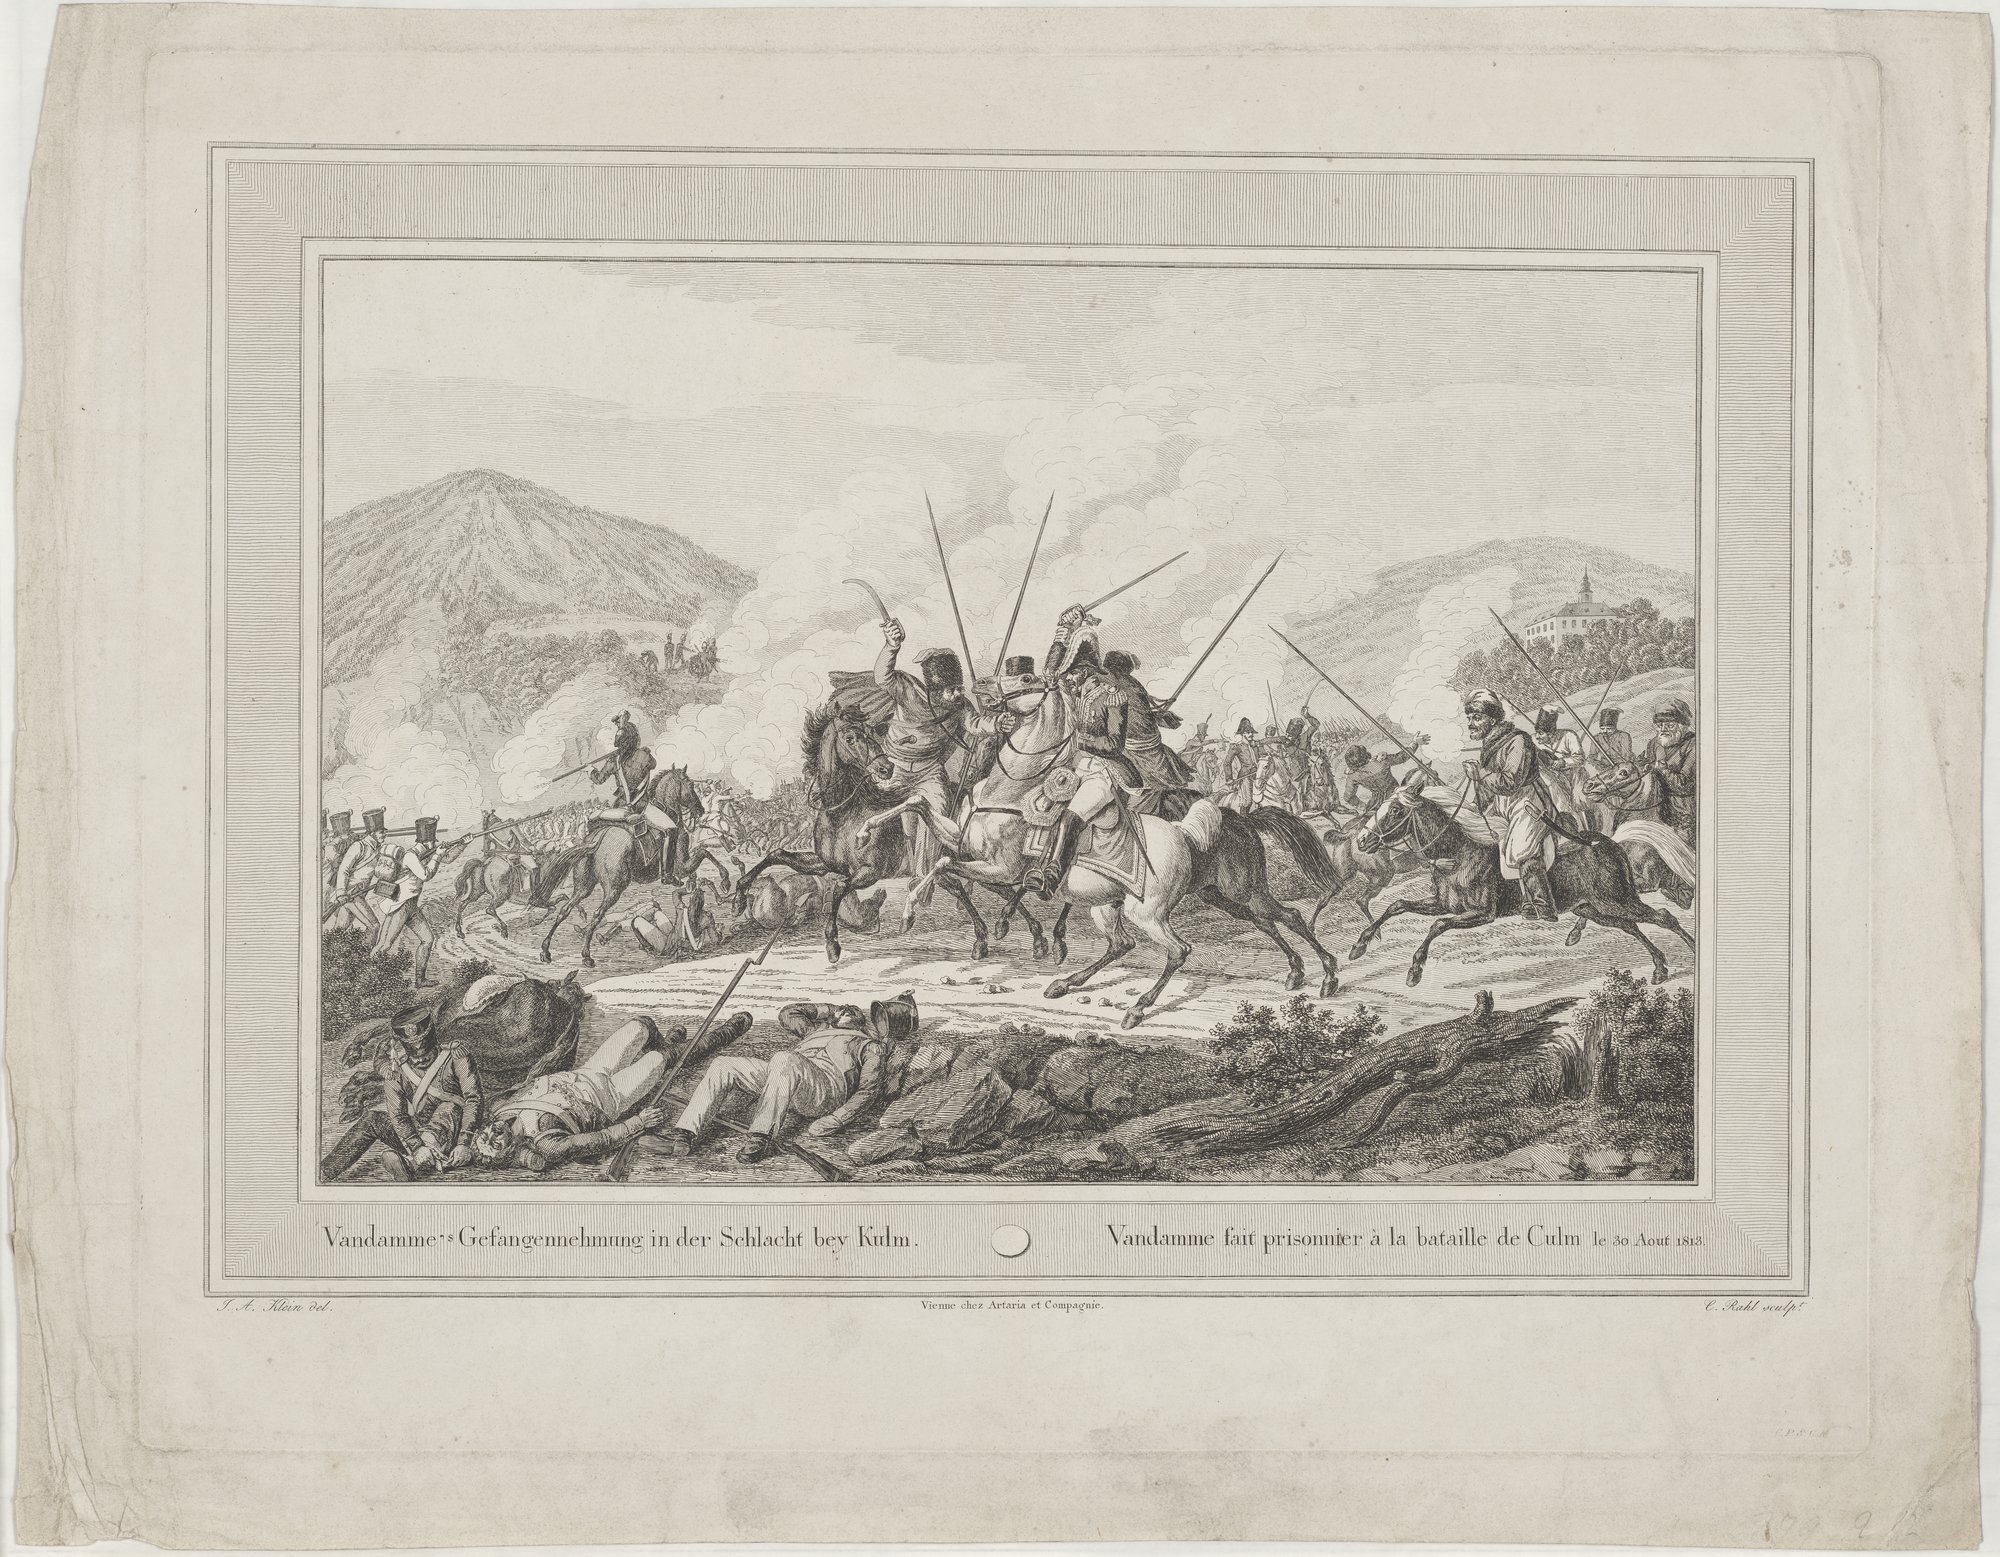 Vandamme's Gefangennehmung in der Schlacht bey Kulm. (Kulturstiftung Sachsen-Anhalt Public Domain Mark)